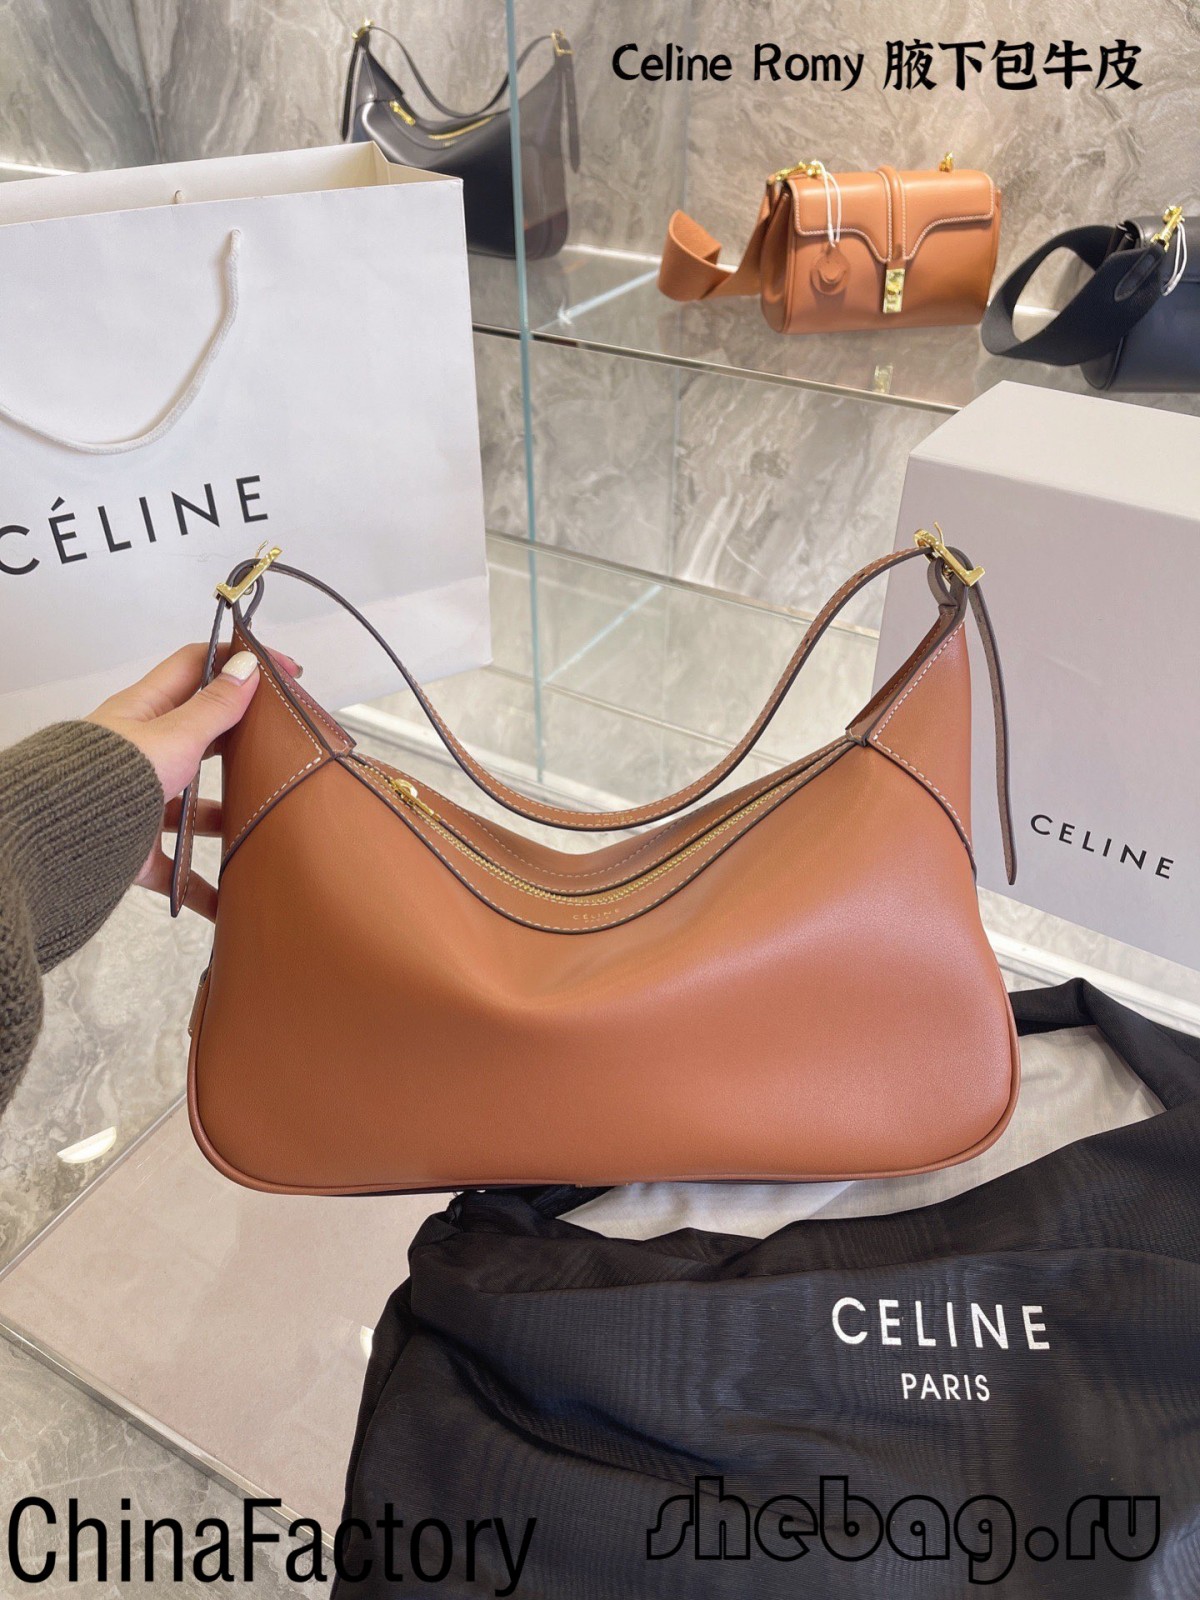 Melhores avaliações de réplicas de bolsas celine: Celine Romy (edição 2022) - Loja online de bolsa Louis Vuitton falsa de melhor qualidade, bolsa de designer de réplica ru